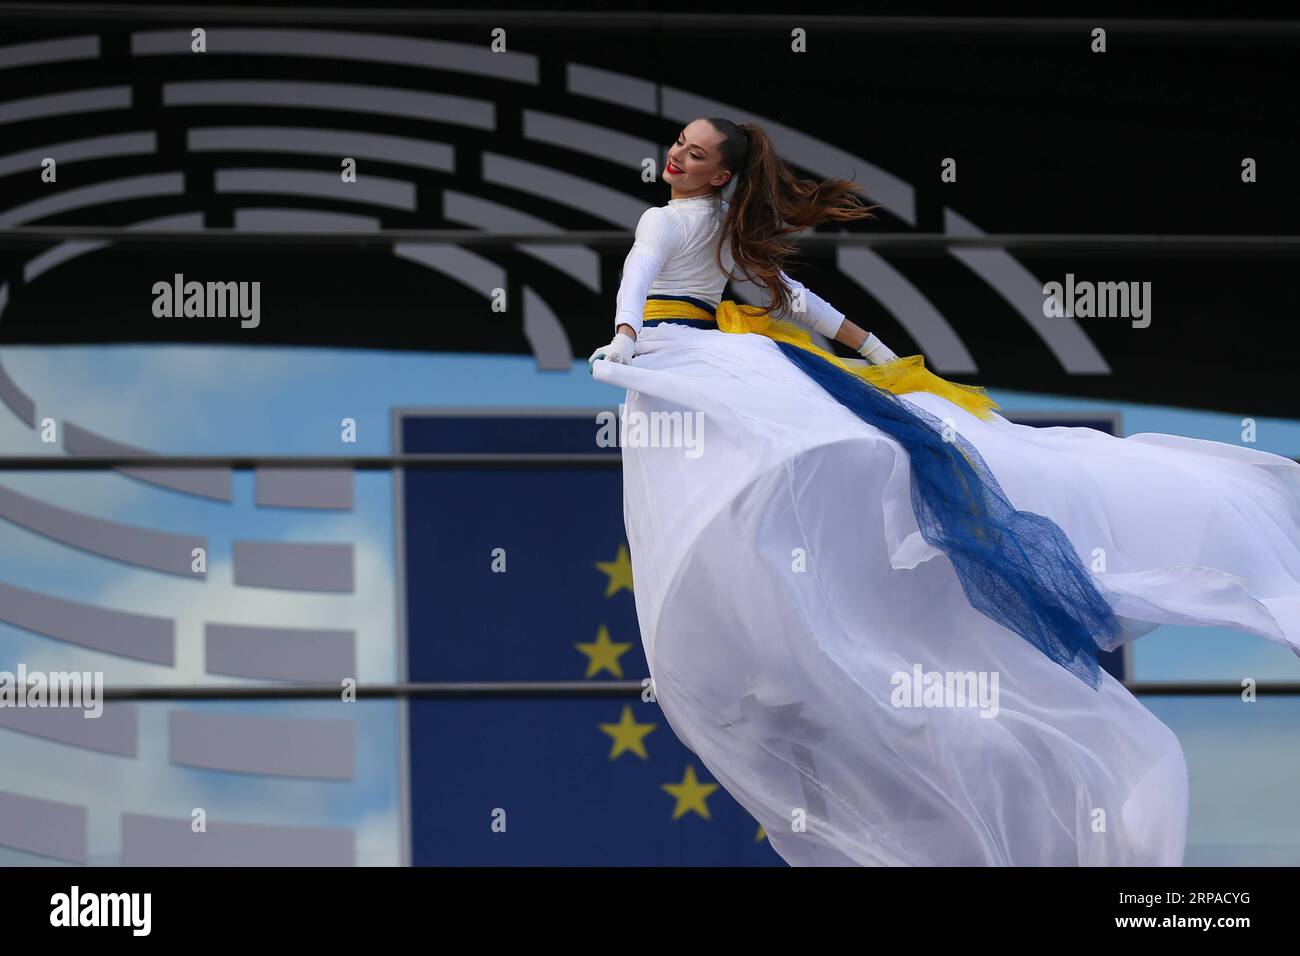 (190504) -- BRUXELLES, 4 maggio 2019 -- Un ballerino preforme per il pubblico davanti al Parlamento europeo durante la giornata aperta delle istituzioni europee a Bruxelles, in Belgio, 4 maggio 2019. La giornata aperta è un'occasione unica per il pubblico per scoprire come funzionano le istituzioni europee. I visitatori hanno libero accesso agli edifici delle istituzioni e ad alcune speciali attività introduttive. ) BELGIO-BRUXELLES-UE-OPEN DAY ZhengxHuansong PUBLICATIONxNOTxINxCHN Foto Stock